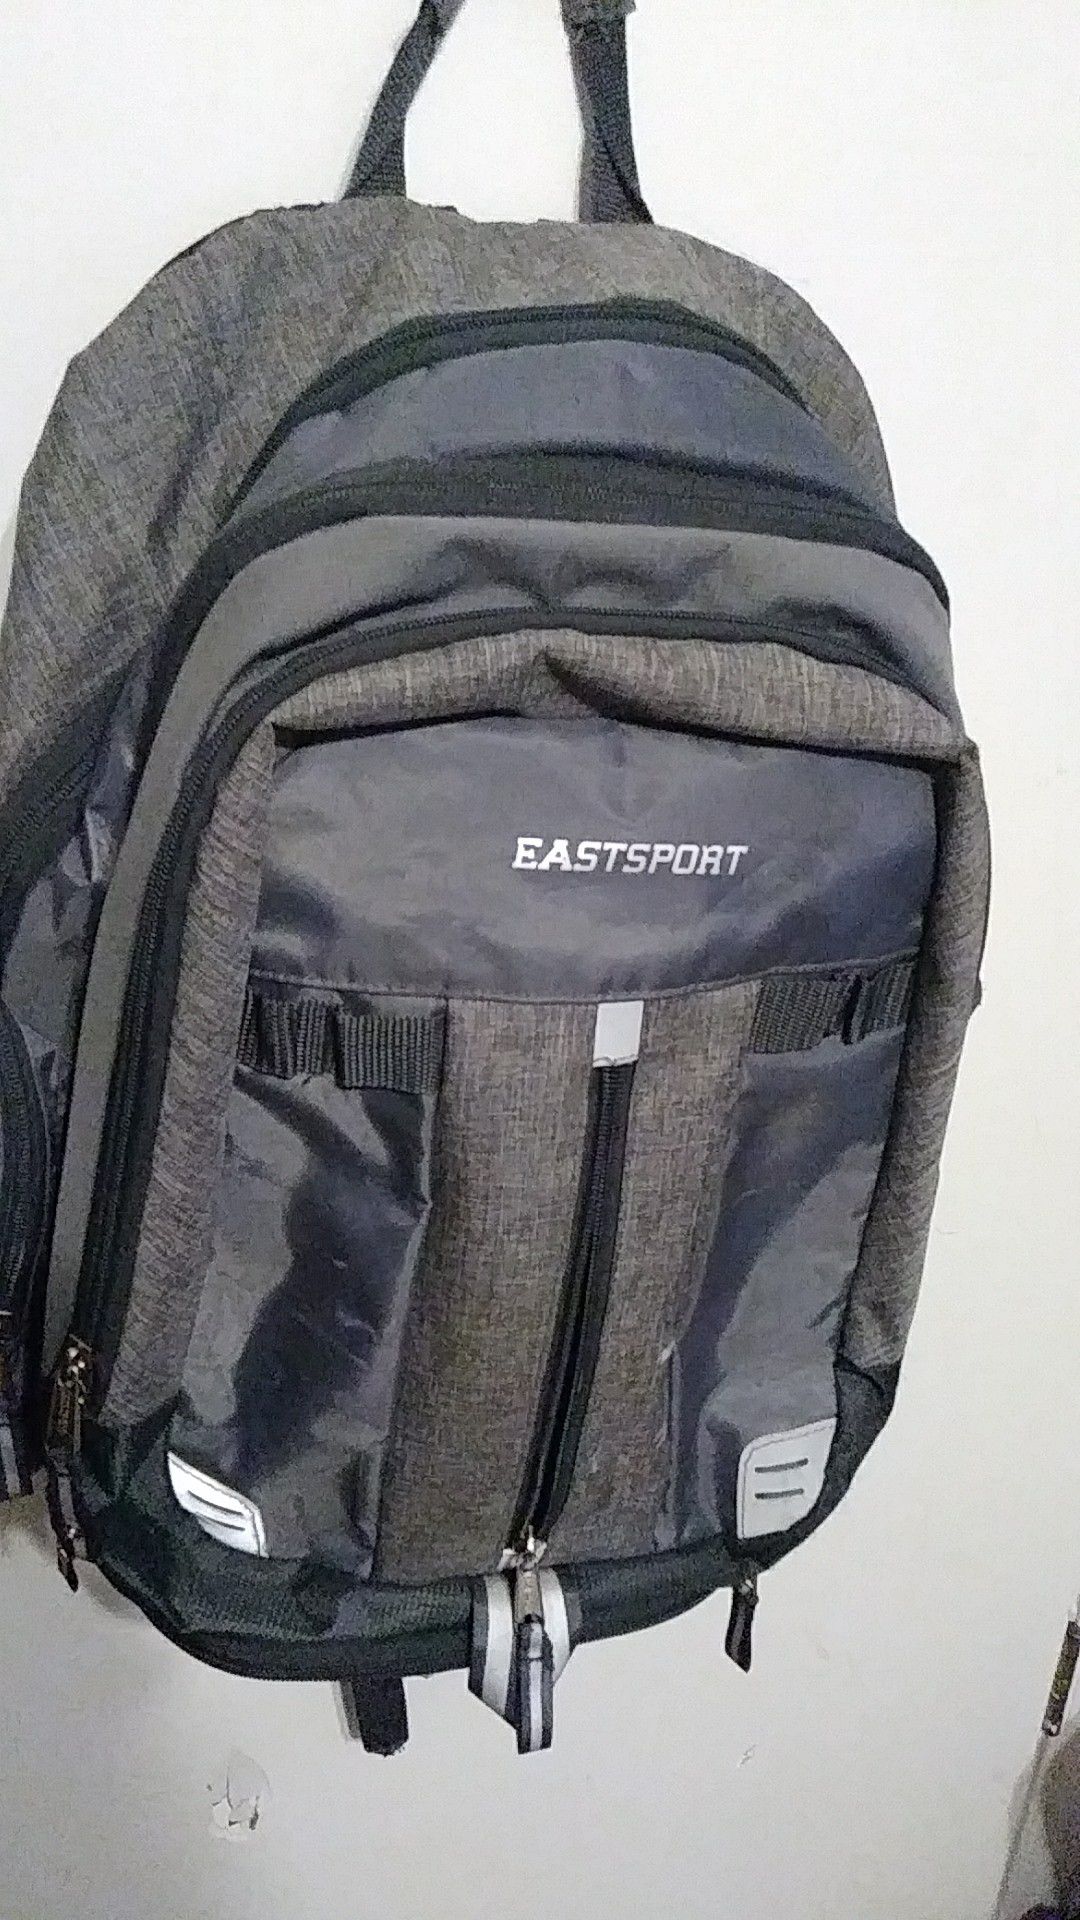 Eastsport backpack